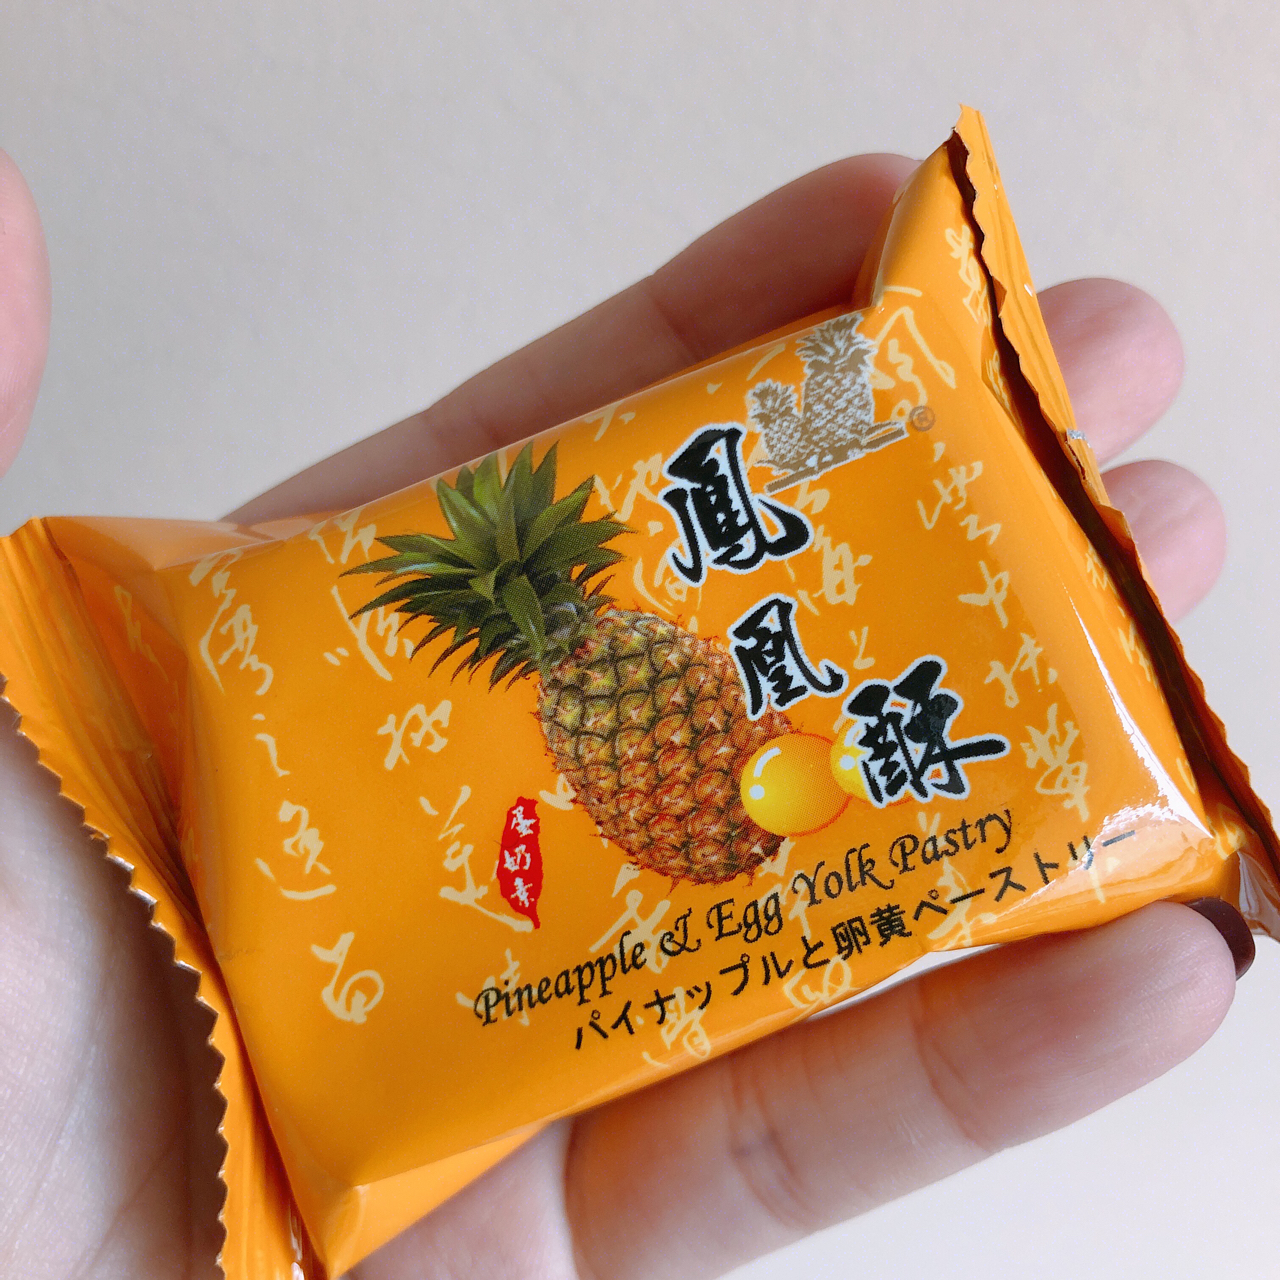 可能是全台湾最好吃的凤梨酥！ 小潘凤梨酥！ 在台北的时候跑去小潘排队 